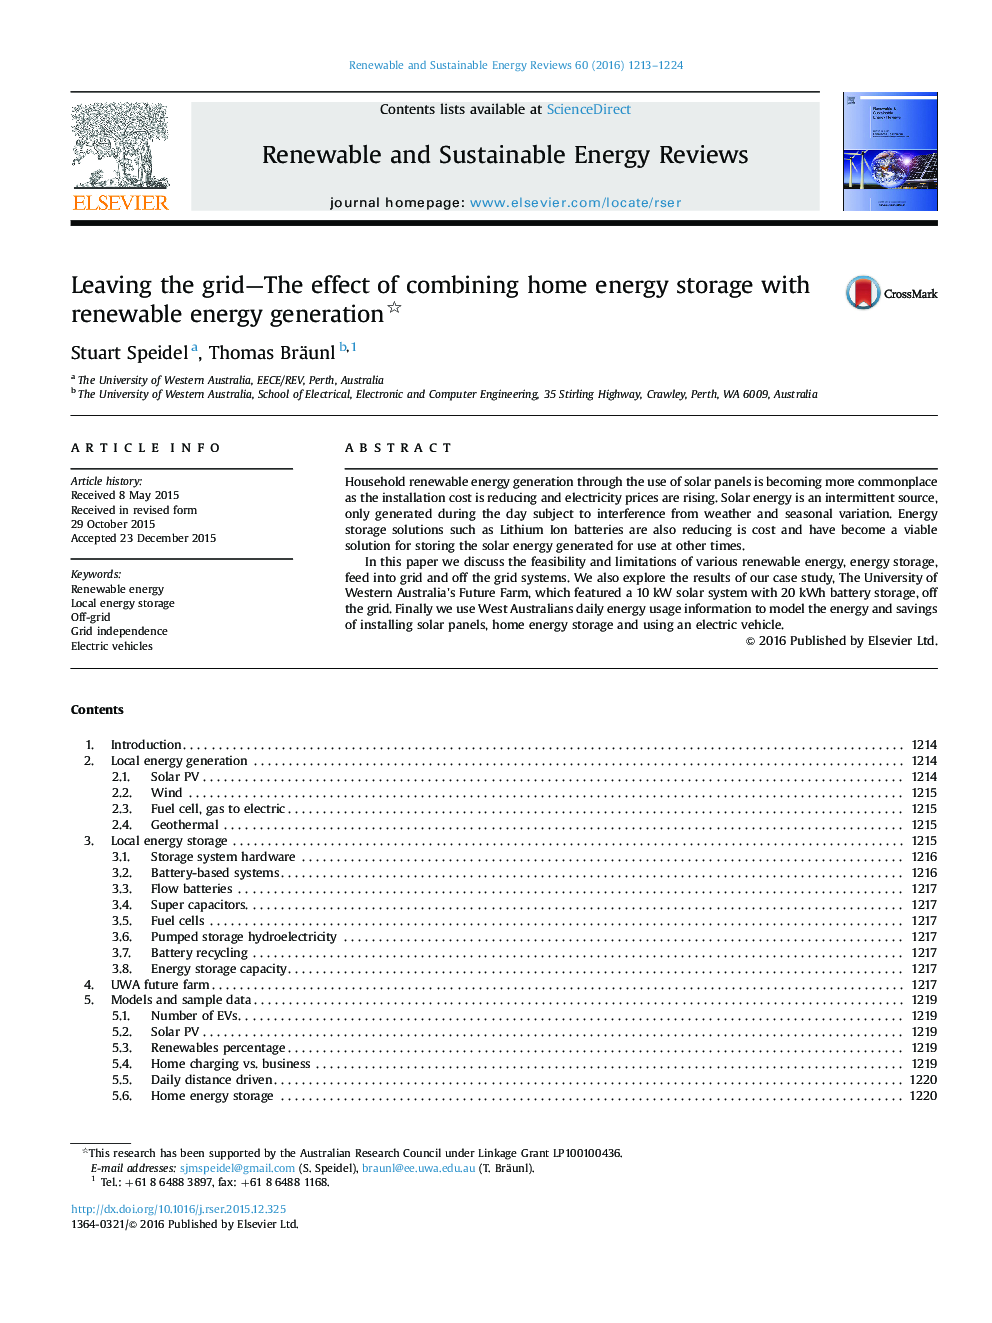 خروج از شبکه - اثر ترکیب ذخیره انرژی خانگی با تولید انرژی تجدید پذیر 